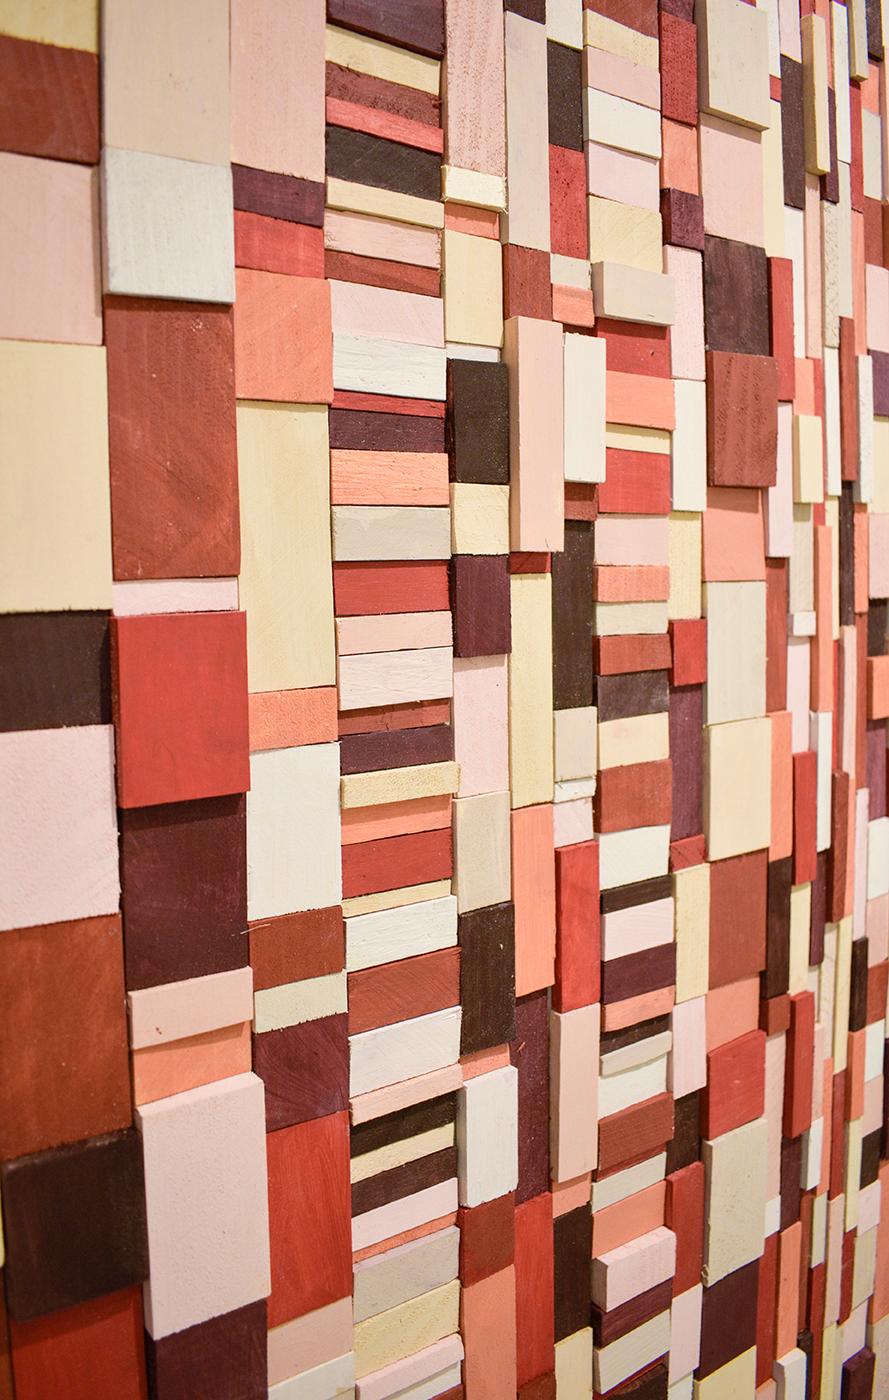 Piquant: Abstrakte geometrische 3D-Holz-Wandskulptur in Rot, Rosa, Pfirsich, Maroon (Braun), Abstract Sculpture, von Stephen Walling